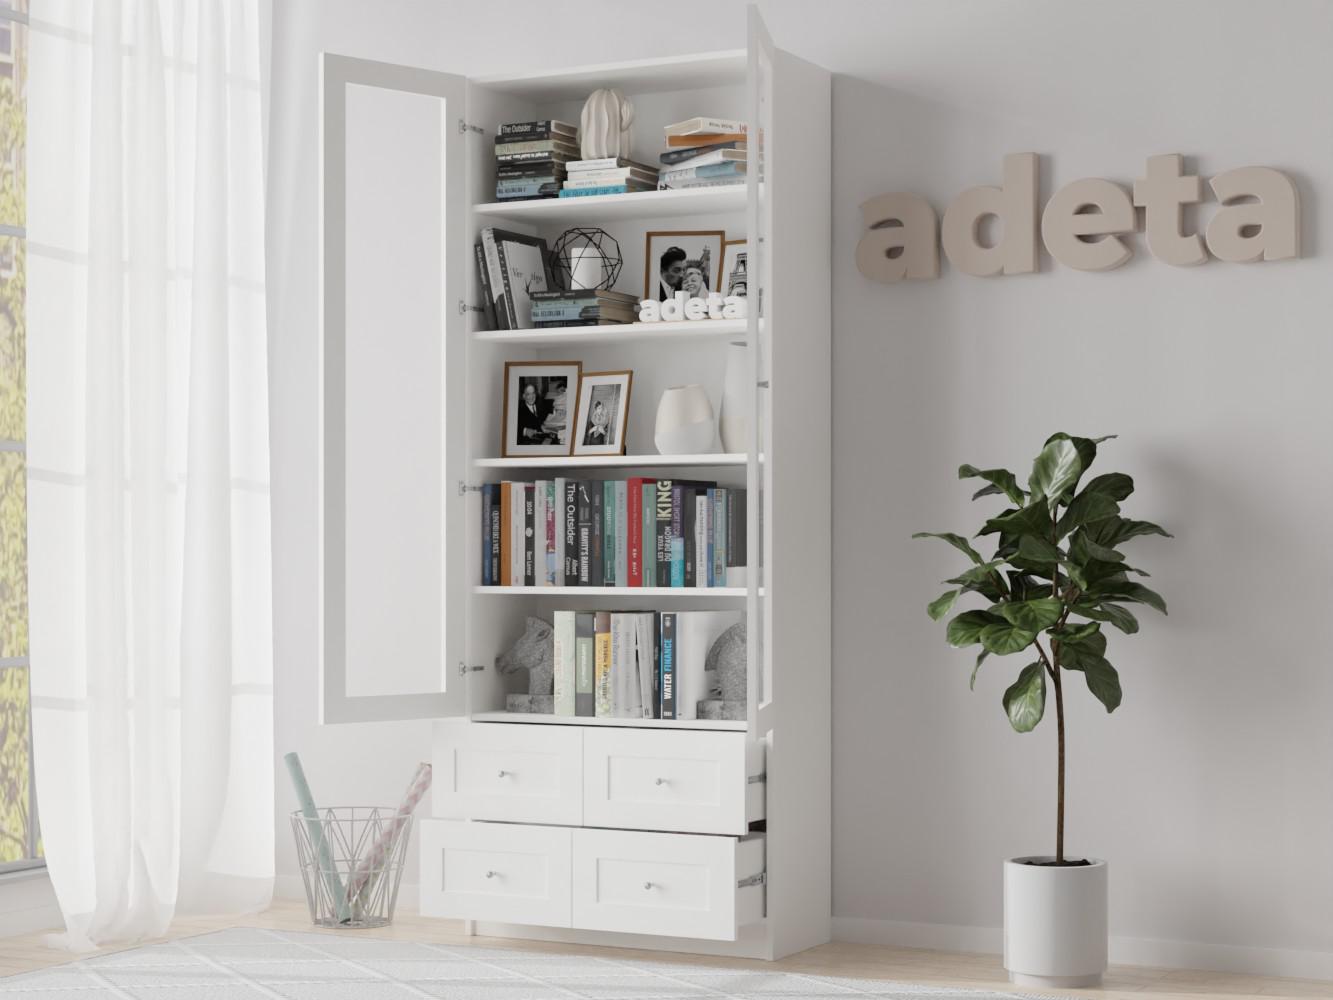 Изображение товара Книжный шкаф Билли 316 white ИКЕА (IKEA), 80x30x202 см на сайте adeta.ru